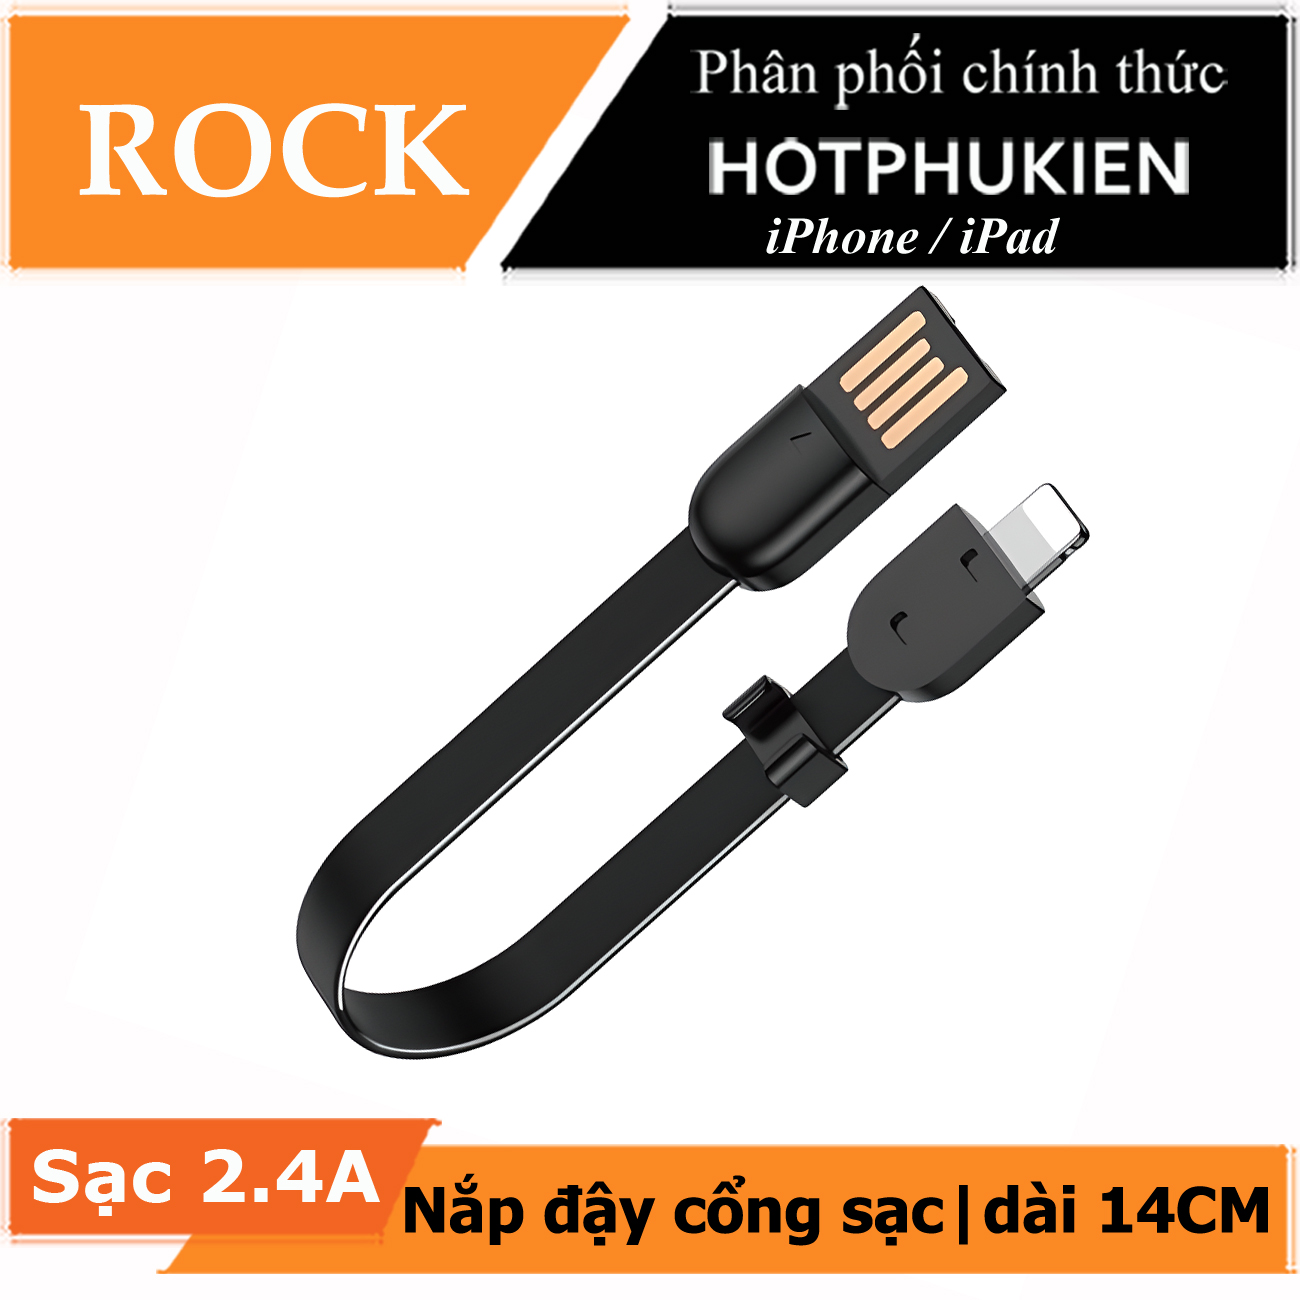 Dây cáp sạc nhanh 2.4A cho iPhone / iPad dài 14cm kiêm móc gắn chìa khóa hiệu ROCK S3 RCB-0764